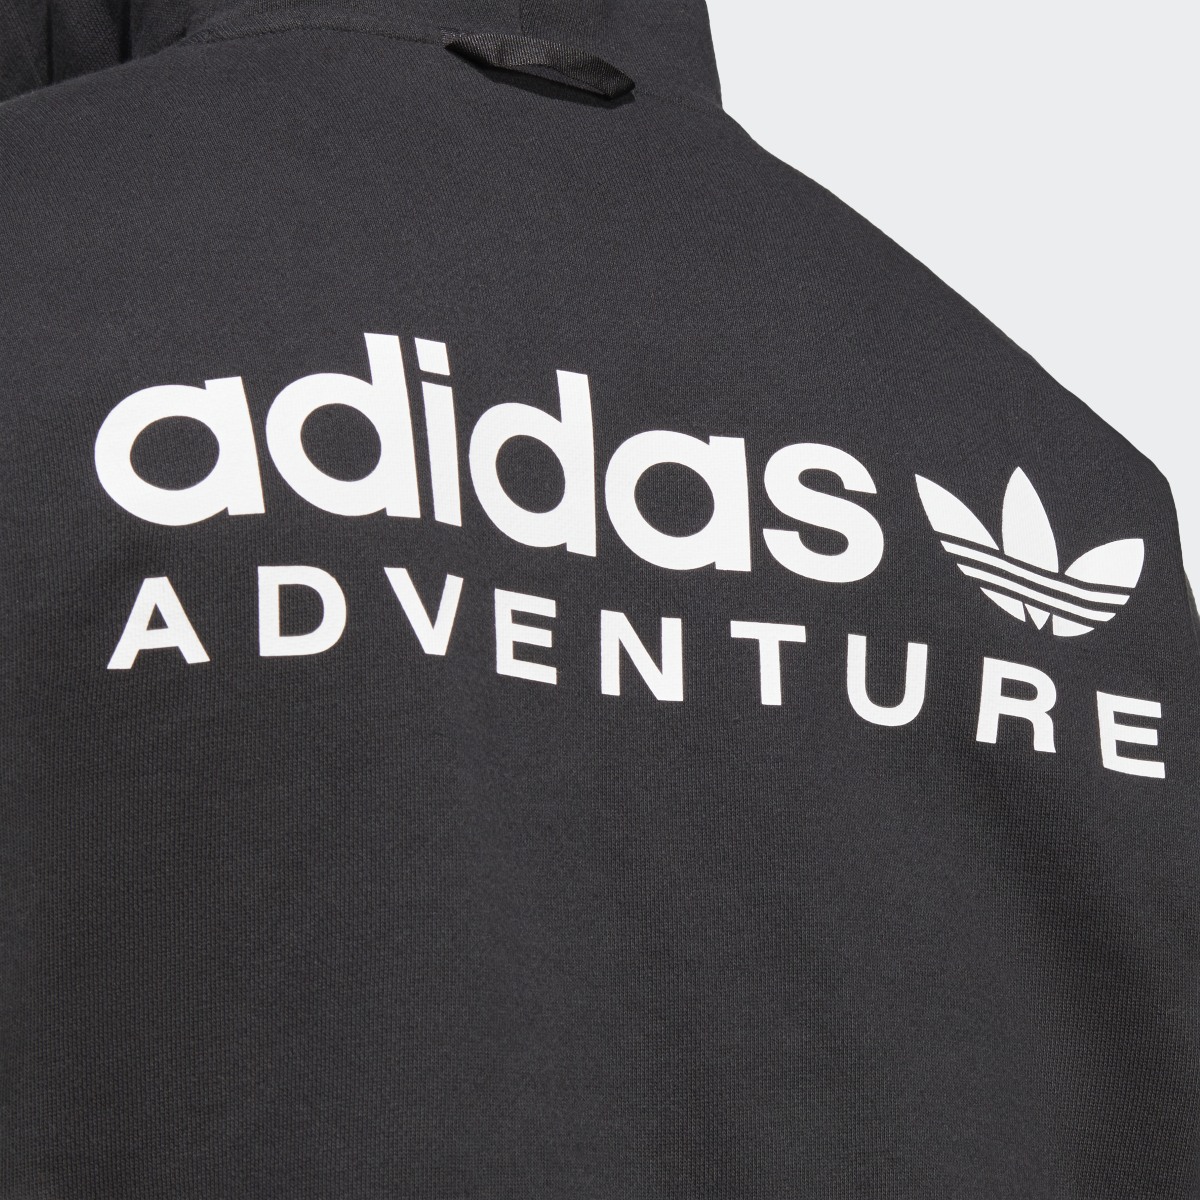 Adidas Camisola com Capuz adidas Adventure. 8